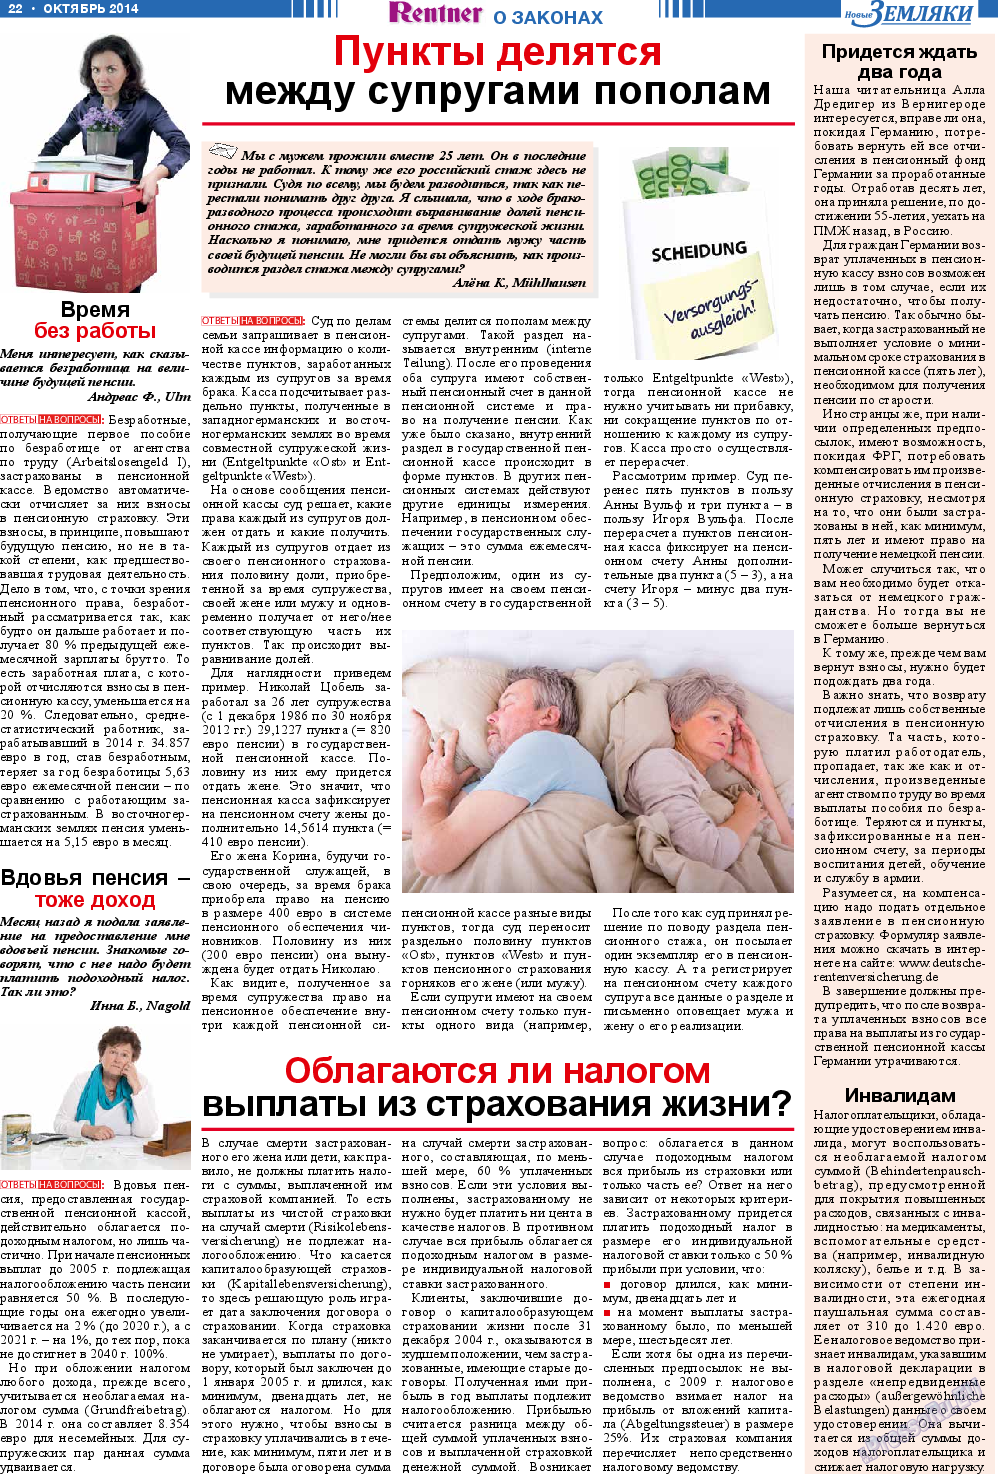 Новые Земляки (газета). 2014 год, номер 10, стр. 22